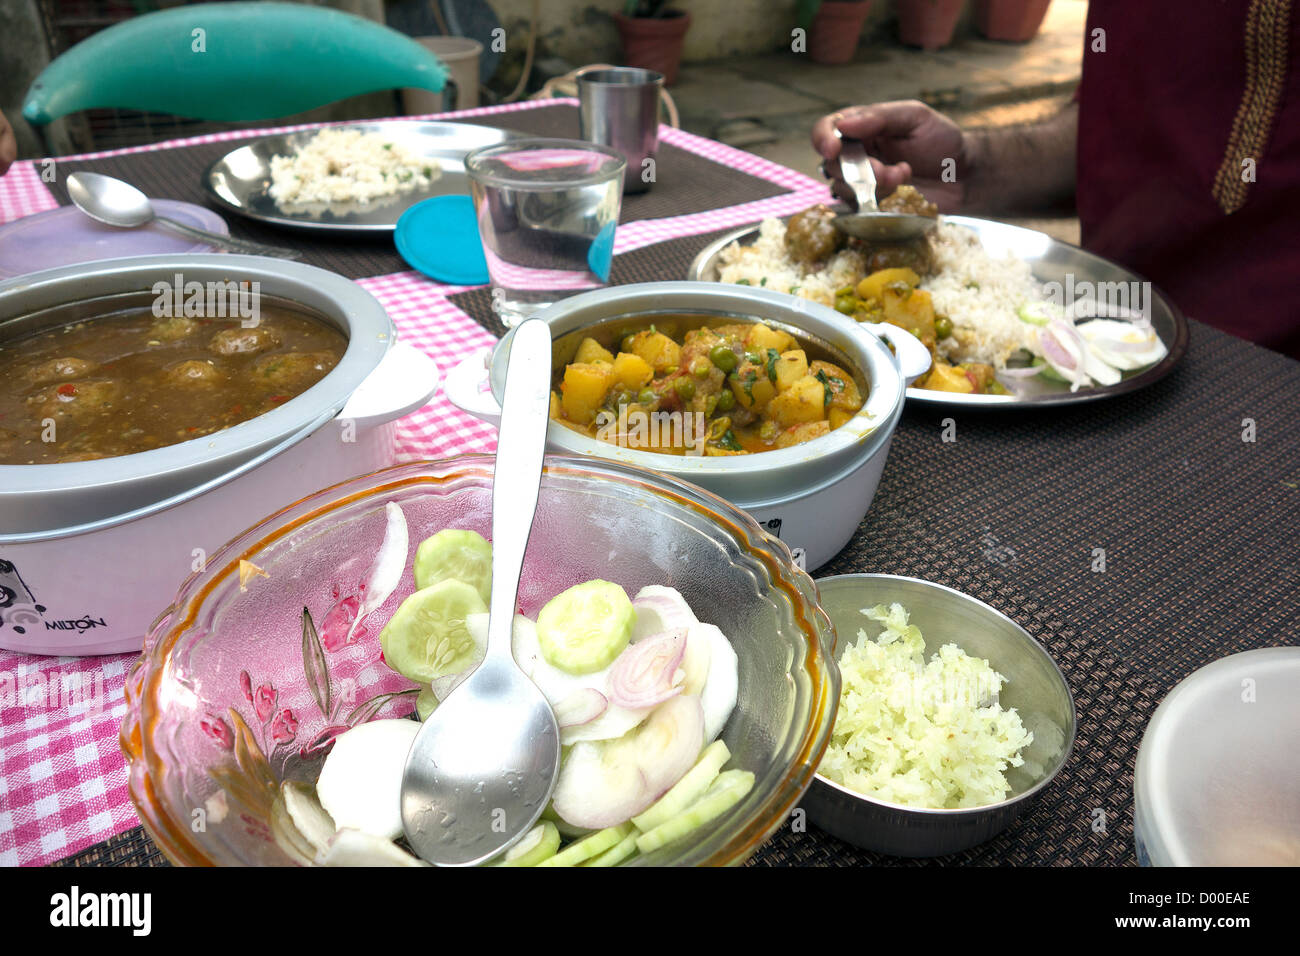 La nourriture traditionnelle indienne prêt-à-manger le midi Table à manger les plats plats ustensiles de table propagation table à manger de délicieux Banque D'Images